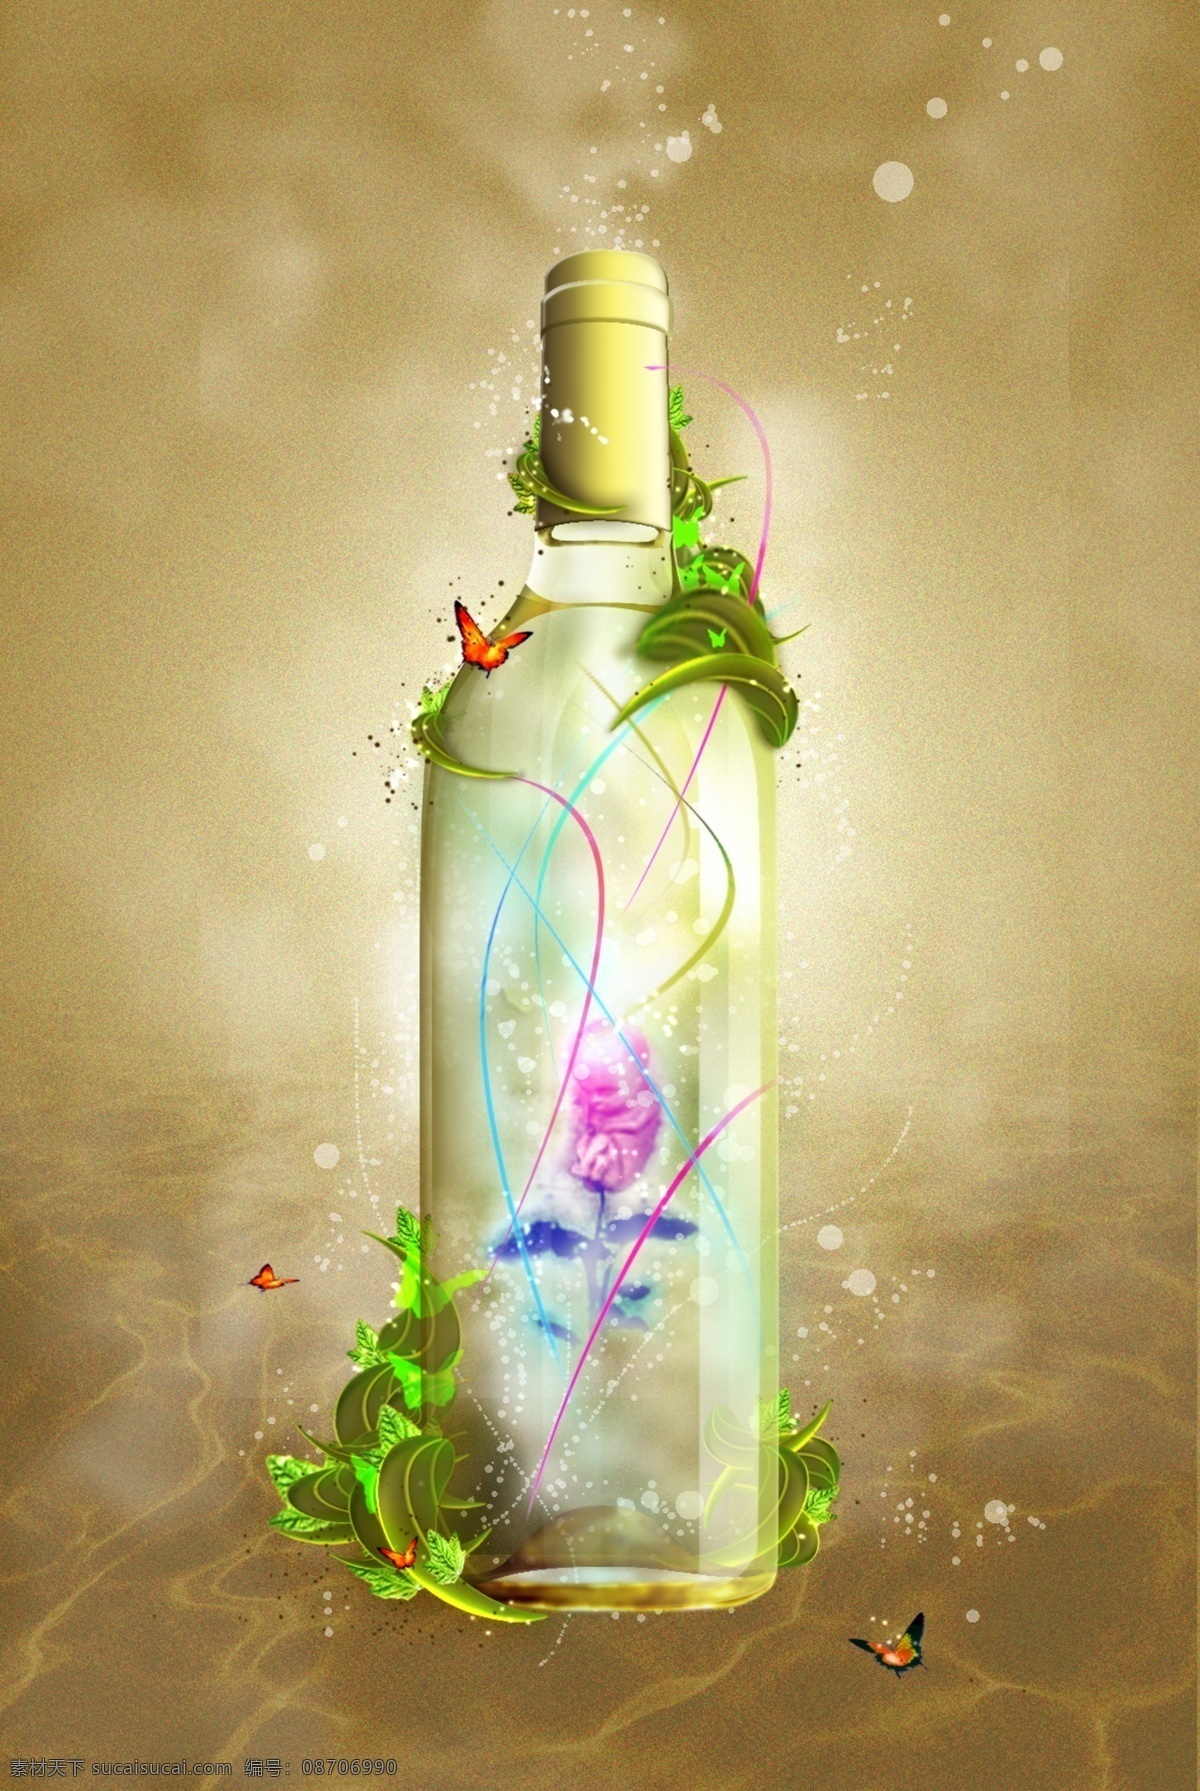 梦幻许愿瓶 梦幻 许愿瓶 唯美 蝴蝶 树藤 广告设计模板 源文件